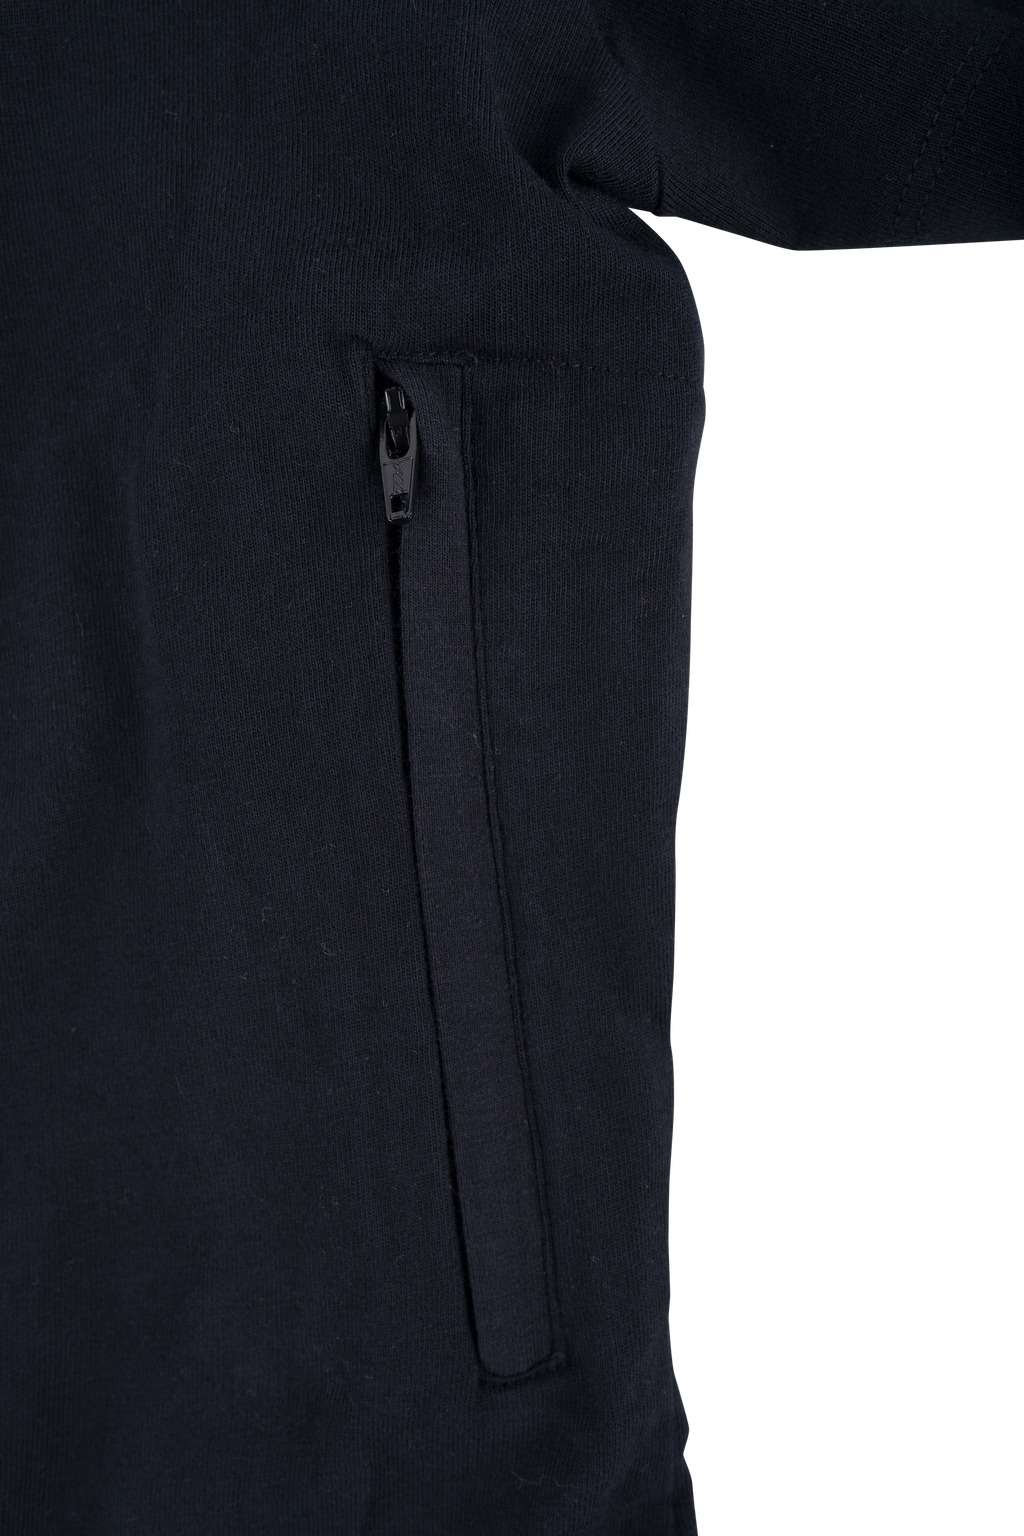 Pickpocket Proof T-shirt Dress with Secret Zipper Pockets